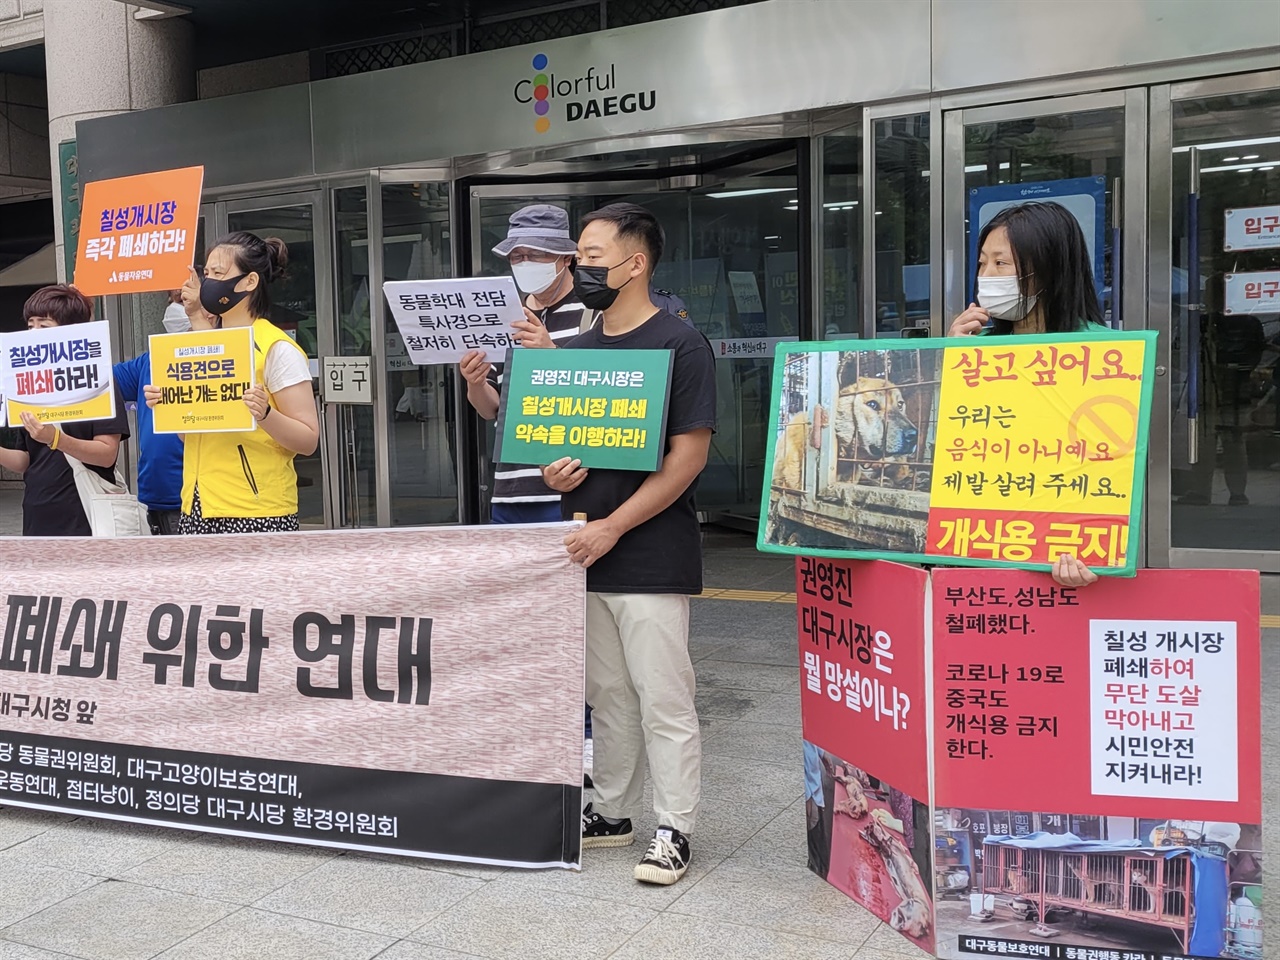 6월 15일 대구시청 앞, ‘마지막 남은 칠성개시장 완전 폐쇄 위한 연대’ 발족 기자회견